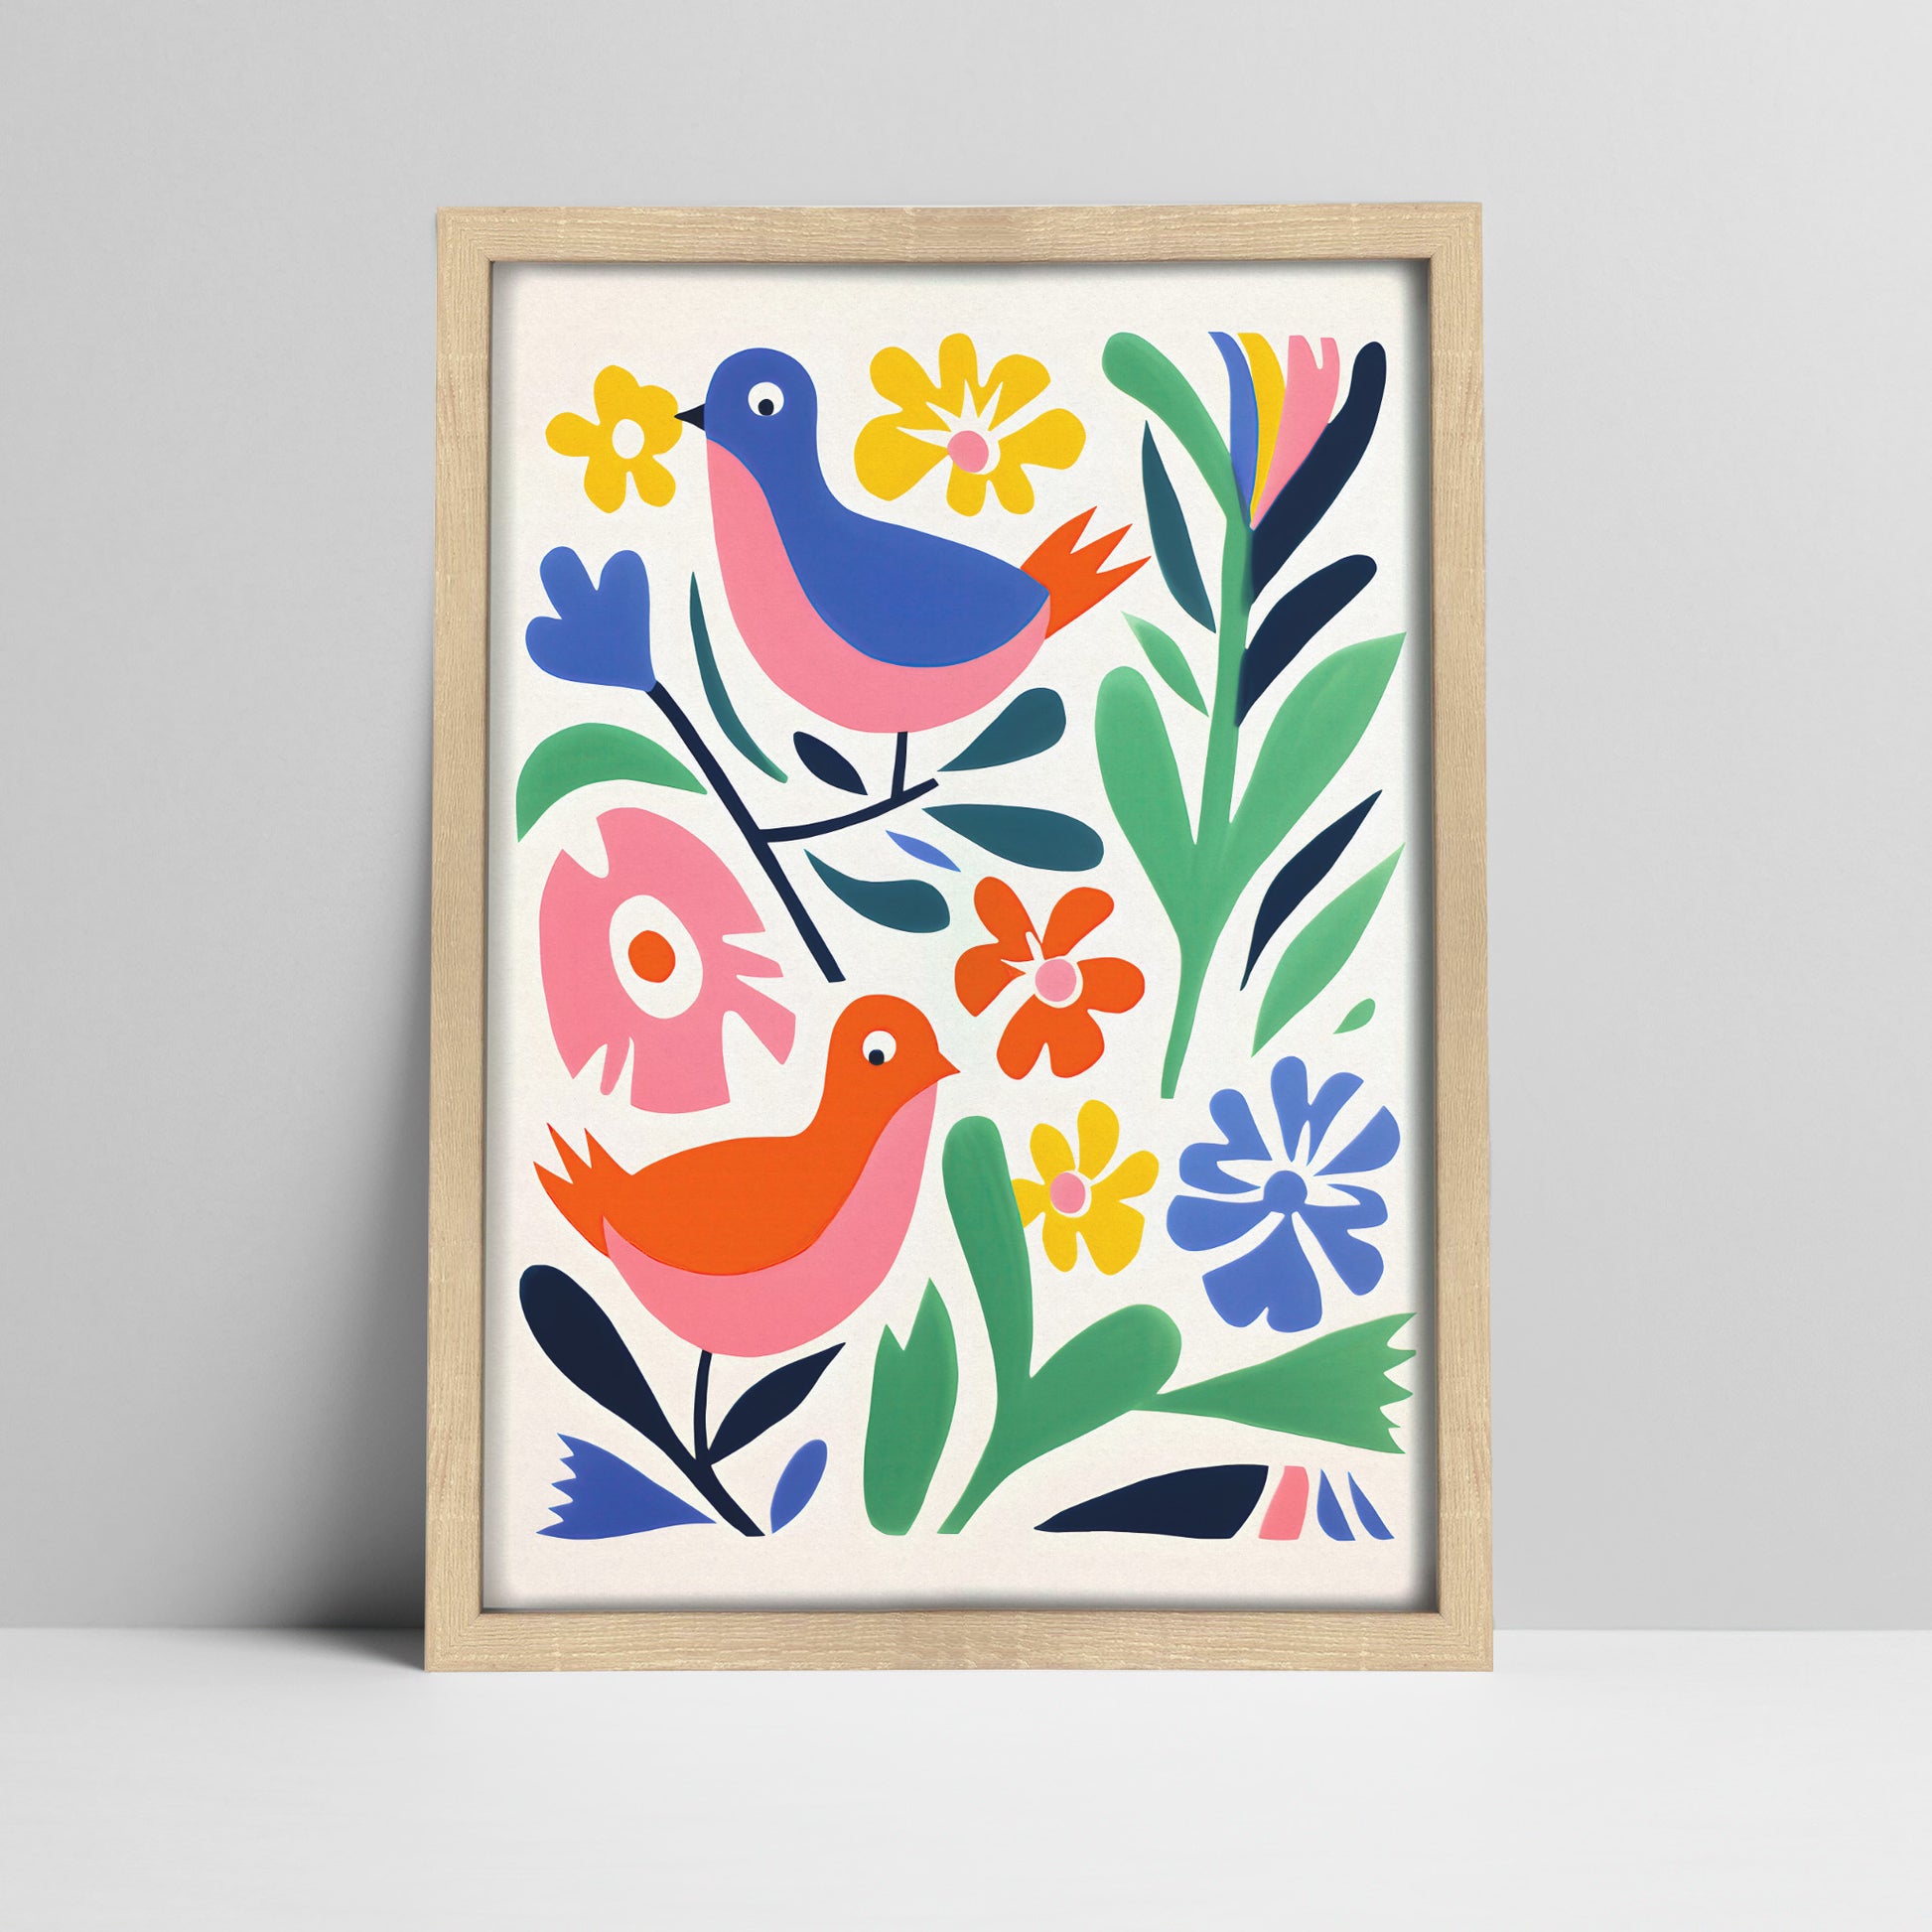 Folk art birds among vibrant flowers print in a light wood frame